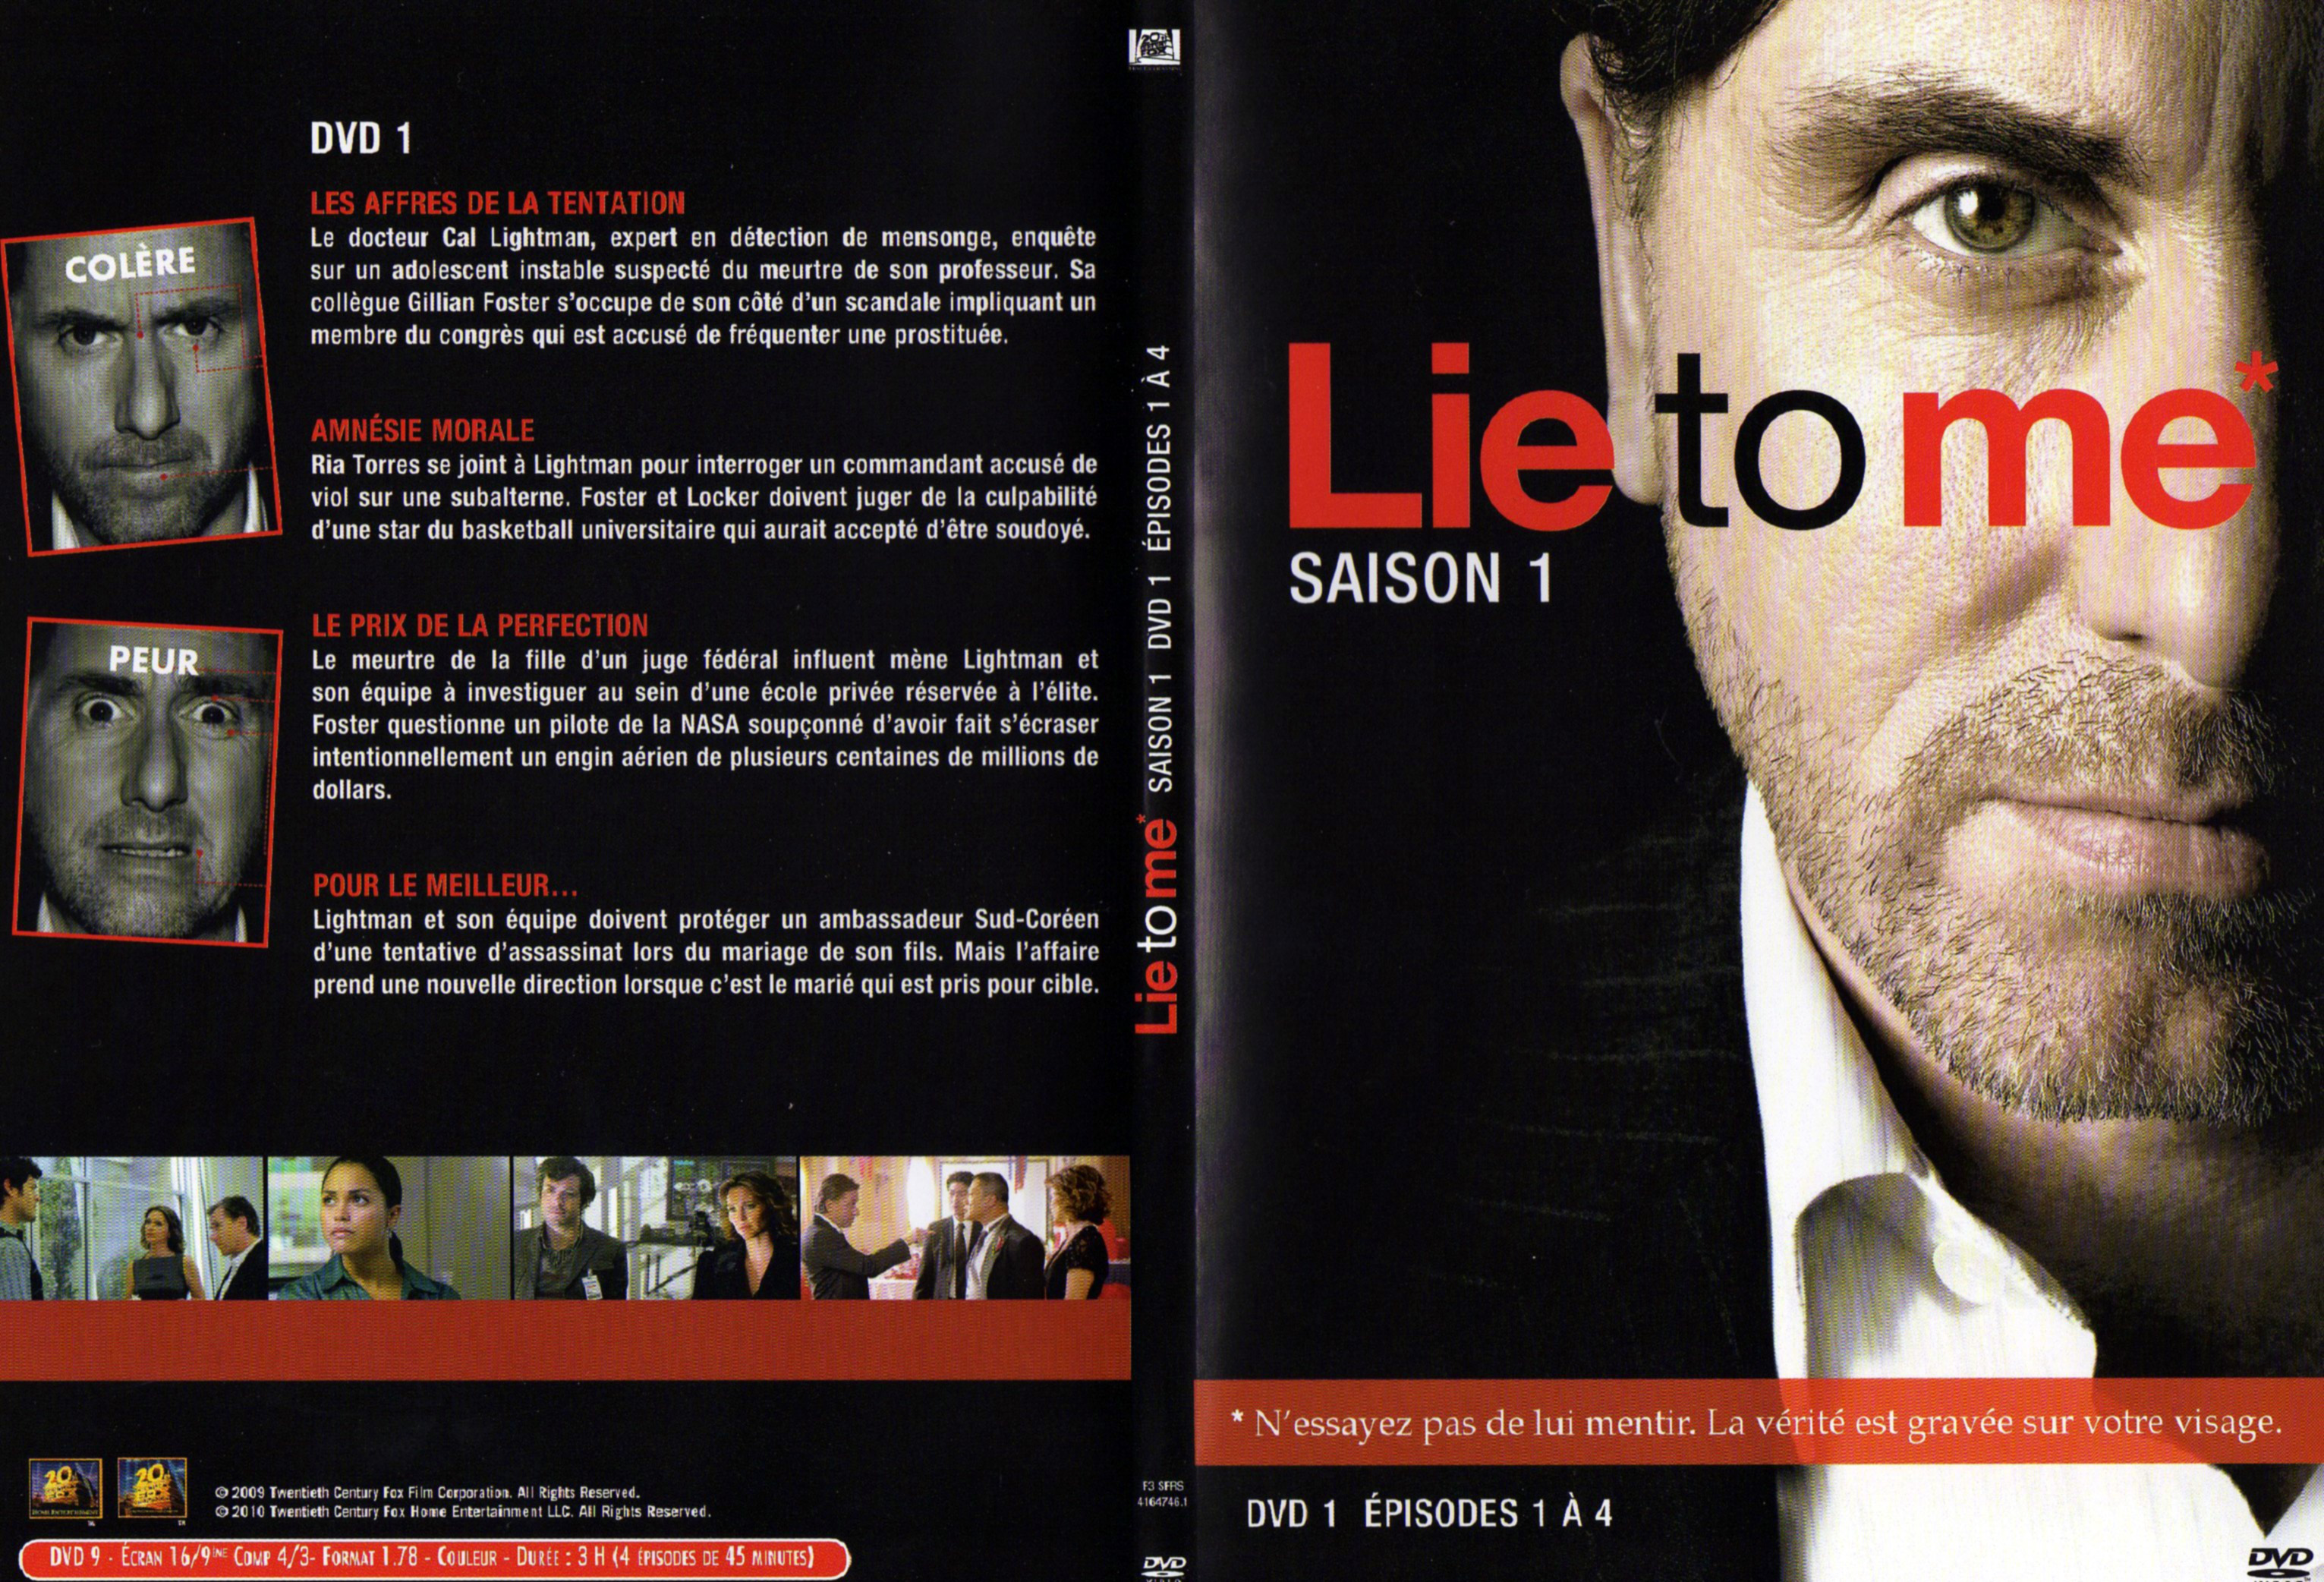 Jaquette DVD Lie to me Saison 1 DVD 1